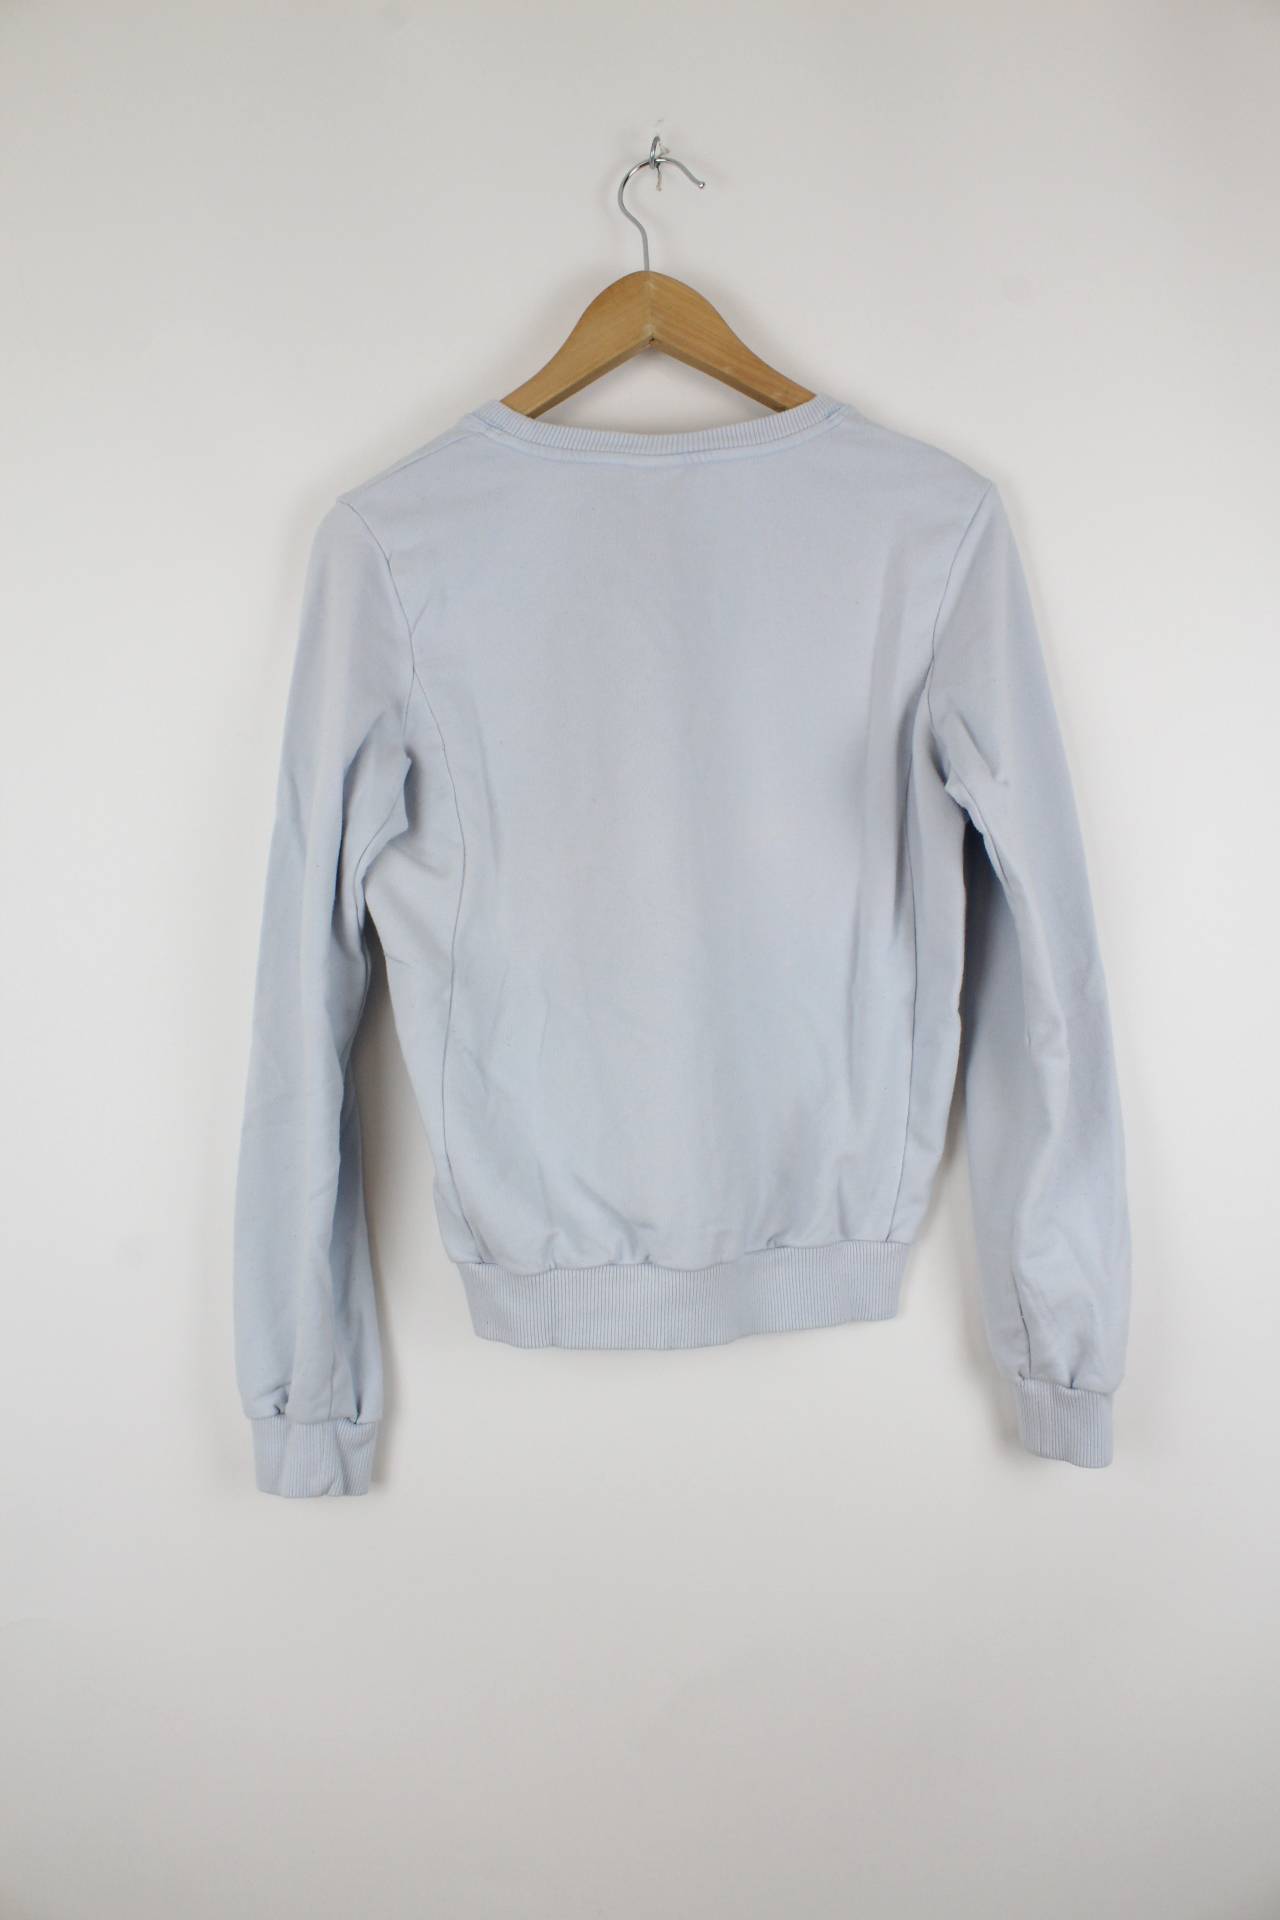 Vintage Nike Sweater Blau - S